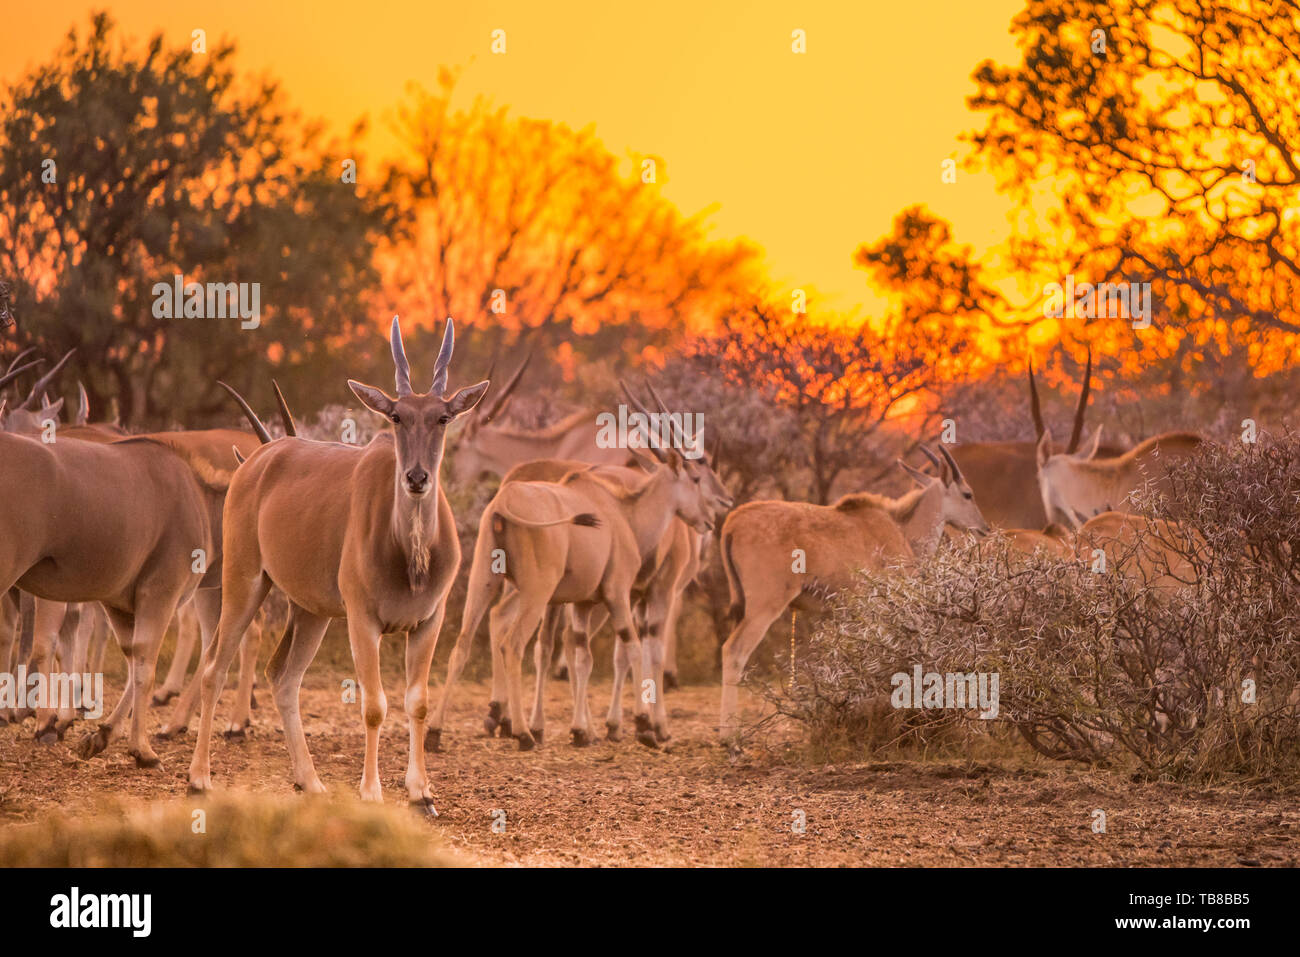 Eine Herde von elenantilope (taurotragus Oryx) um Sträucher unter einer intensiven orange Sonnenuntergang versammelt. Dikhololo Game Reserve, Südafrika Stockfoto